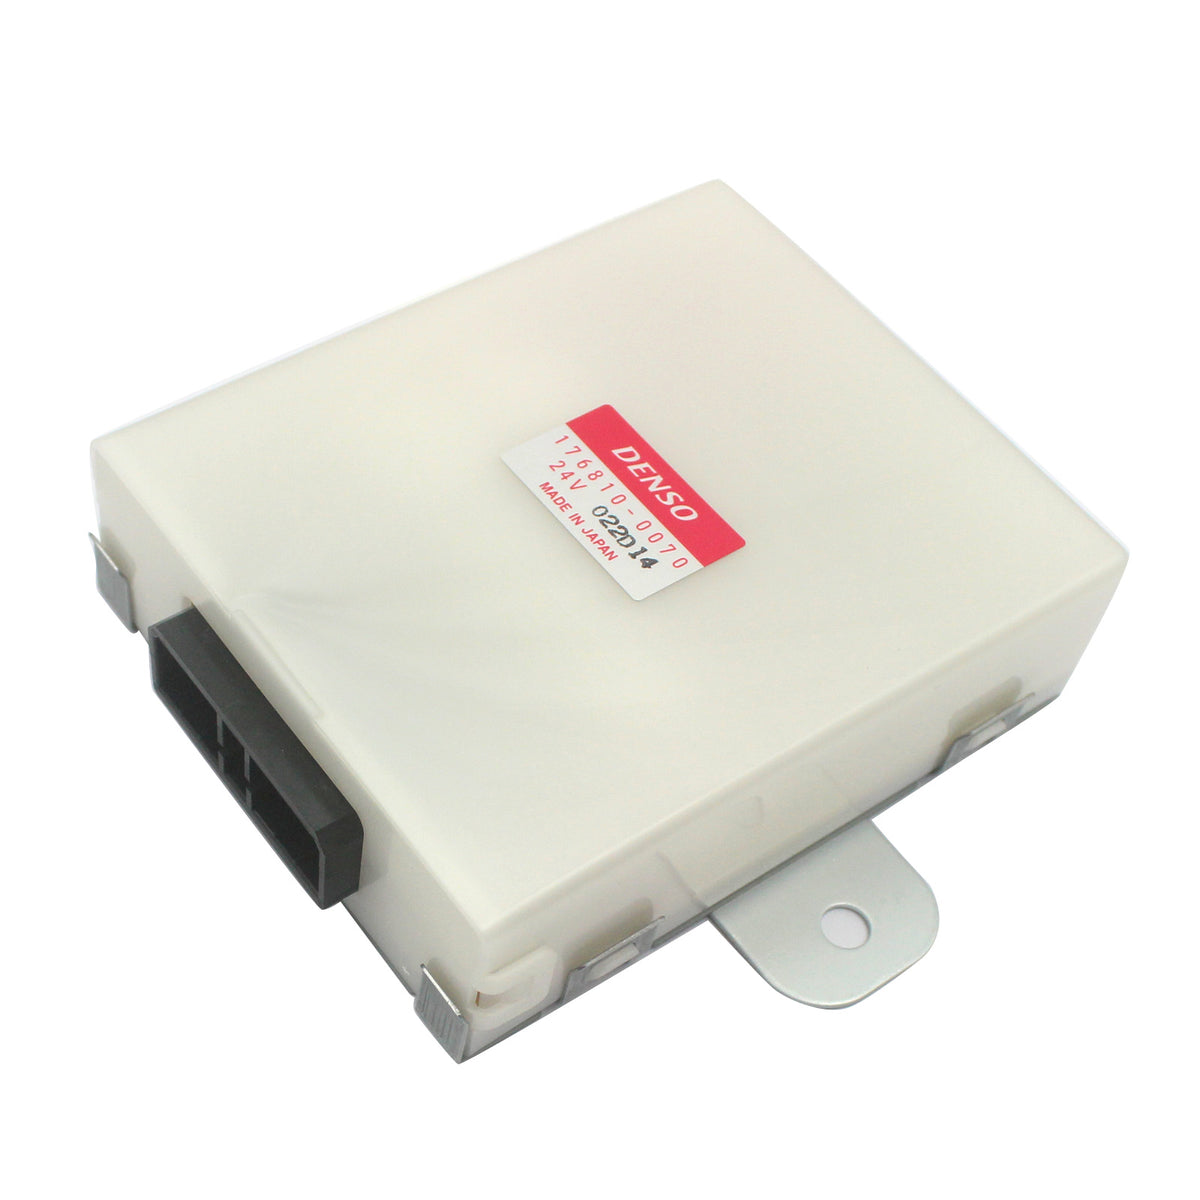 Wiper Motor Controller 24V 176810-0070 for Sumitomo SH350-5 SH210-5